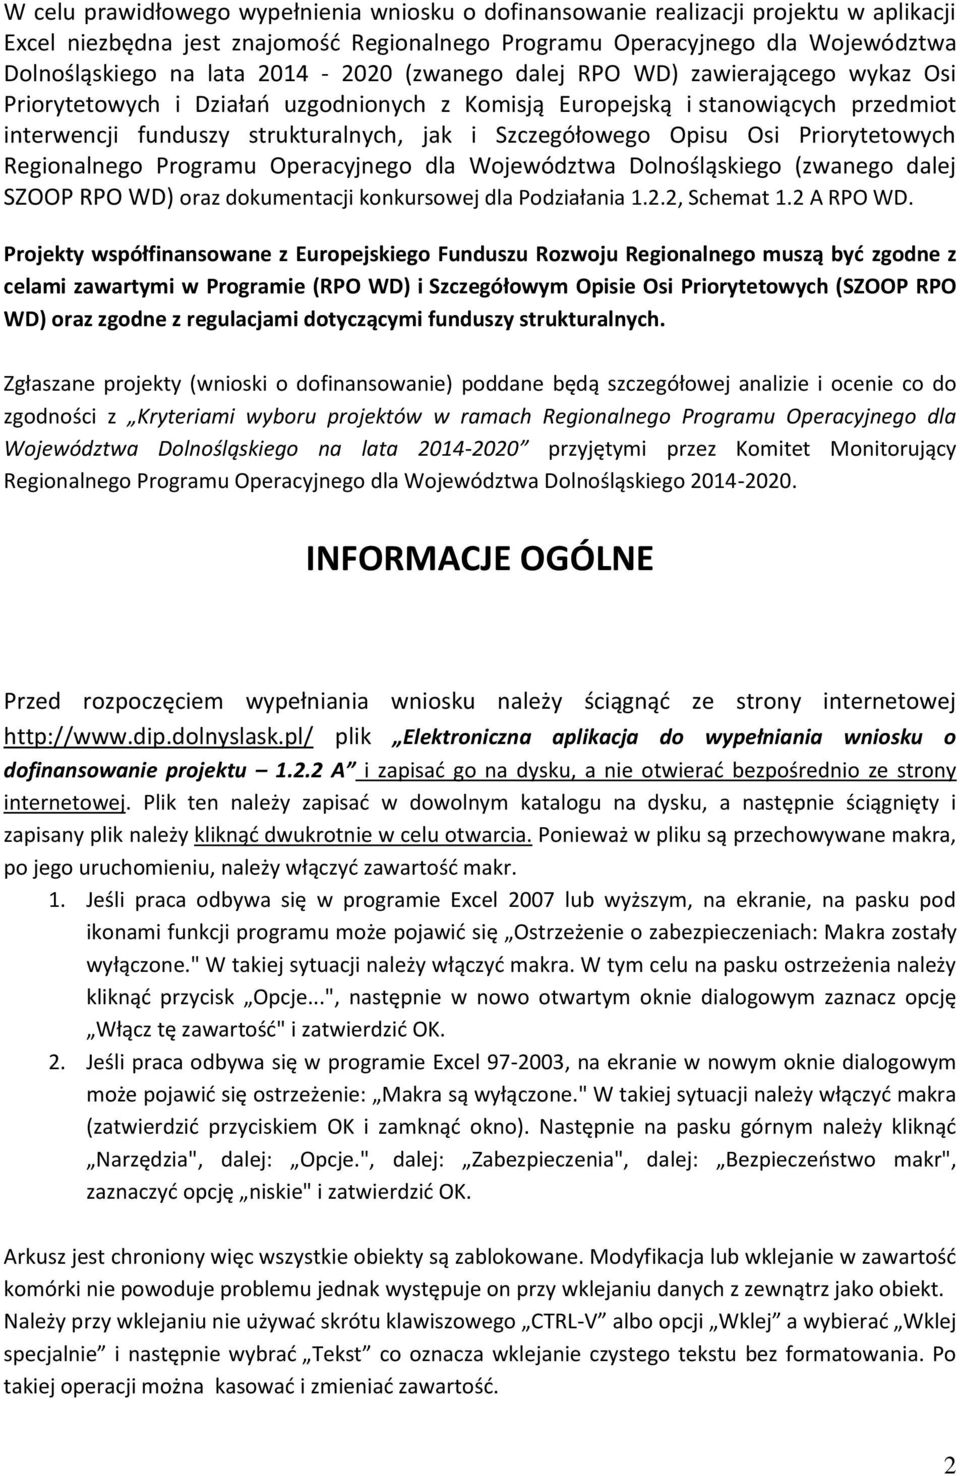 Opisu Osi Priorytetowych Regionalnego Programu Operacyjnego dla Województwa Dolnośląskiego (zwanego dalej SZOOP RPO WD) oraz dokumentacji konkursowej dla Podziałania 1.2.2, Schemat 1.2 A RPO WD.